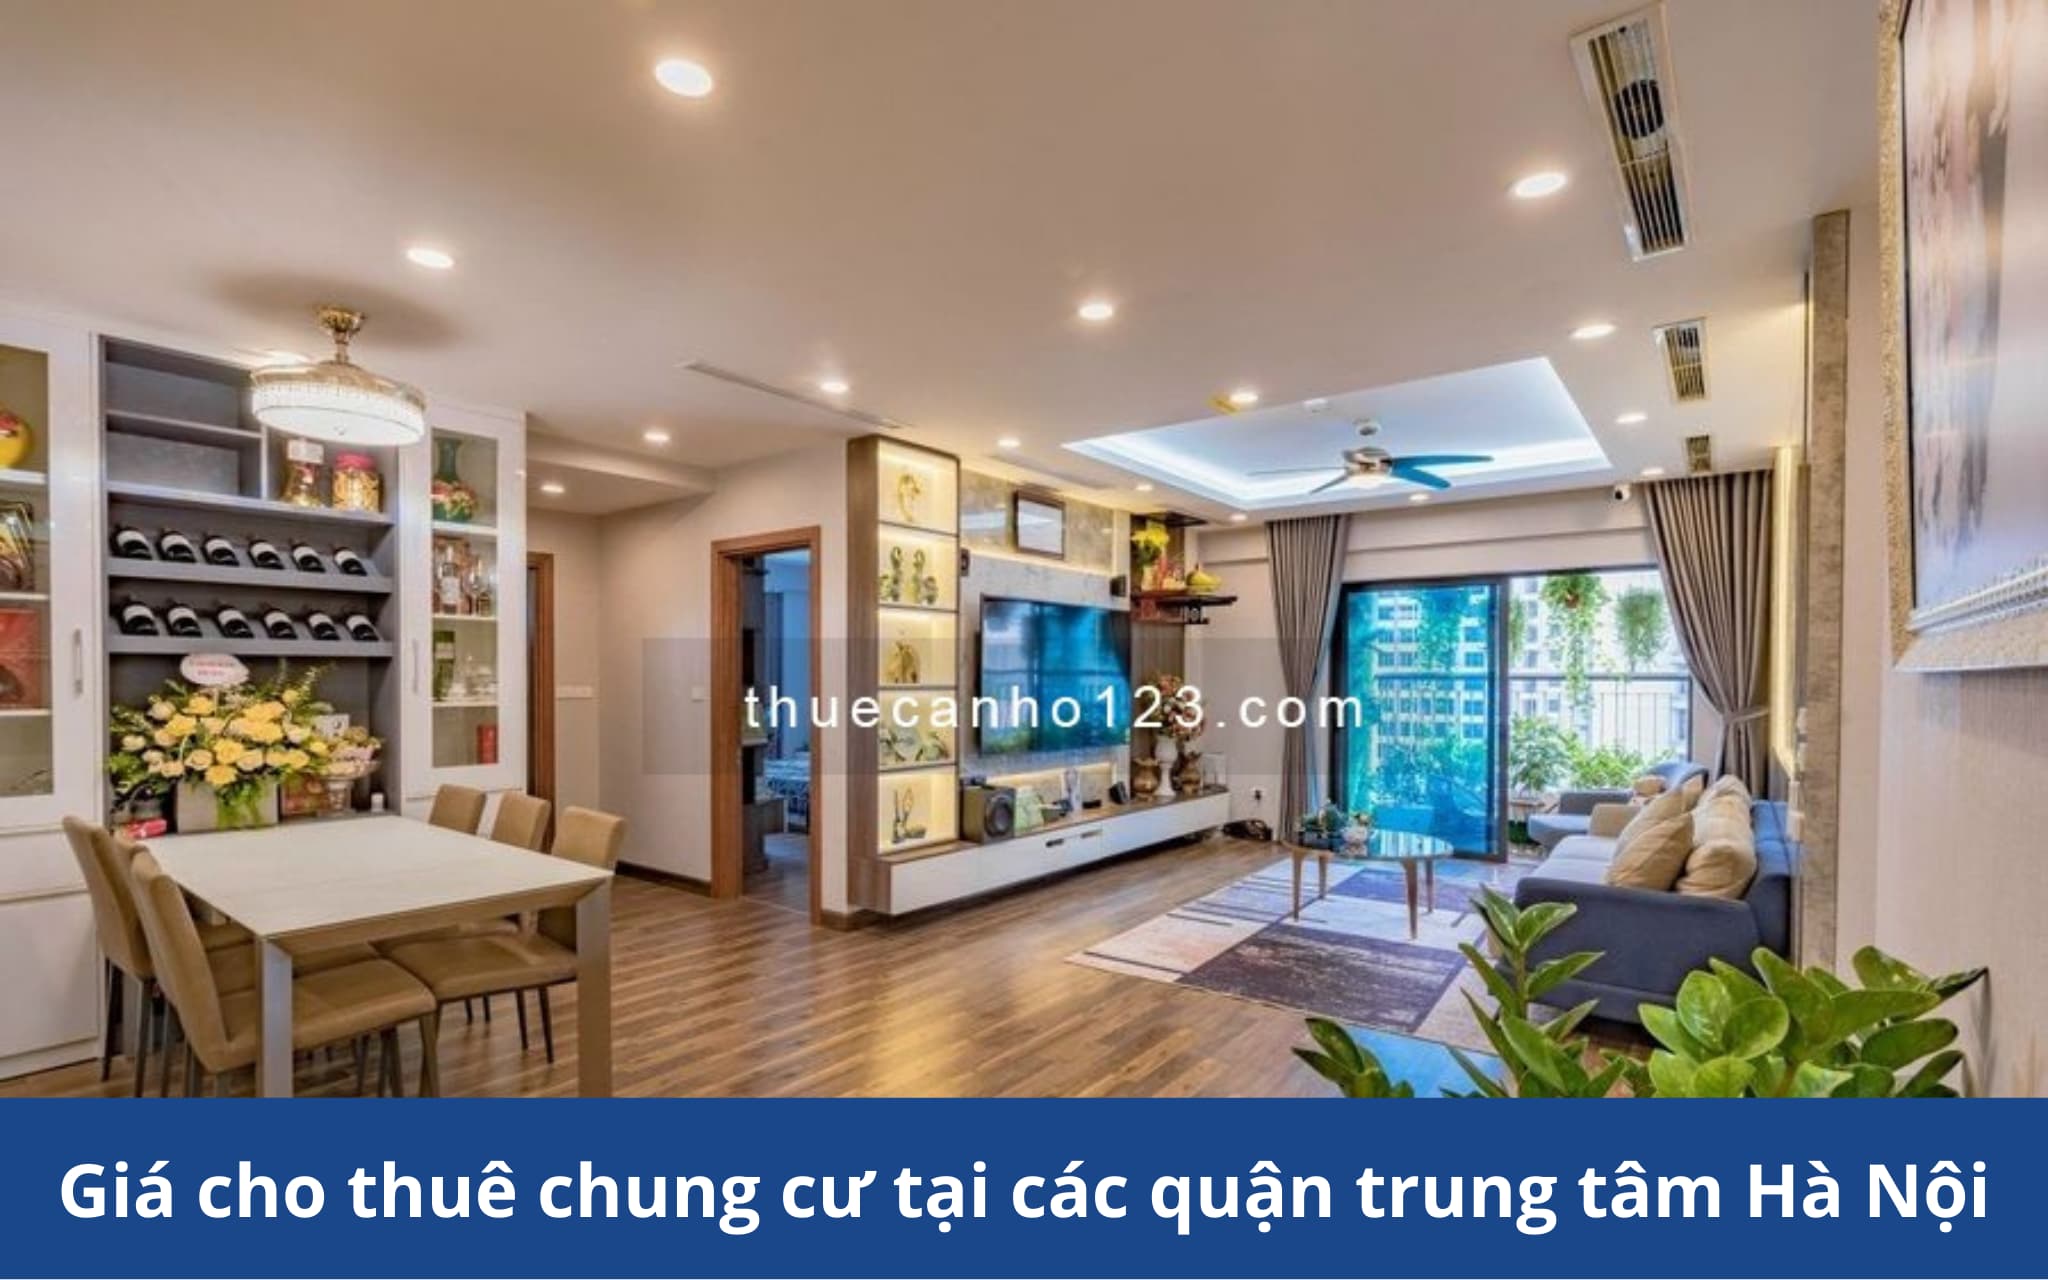 Giá cho thuê chung cư tại các quận trung tâm Hà Nội